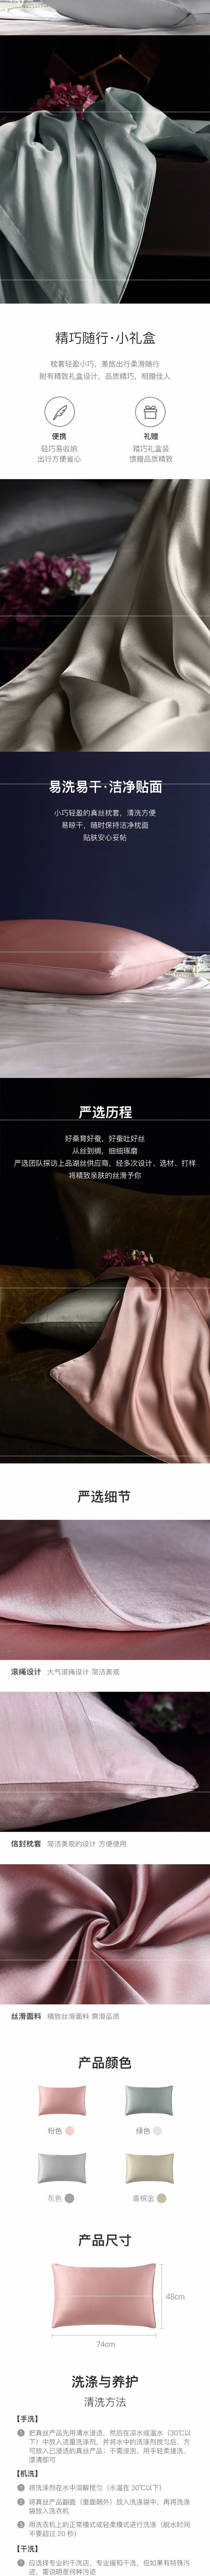 【美仓发货 5-7日达】网易严选 真丝枕套+眼罩 粉色Queen(枕套粉色20x30英寸+眼罩粉色7.87x4.4英寸)